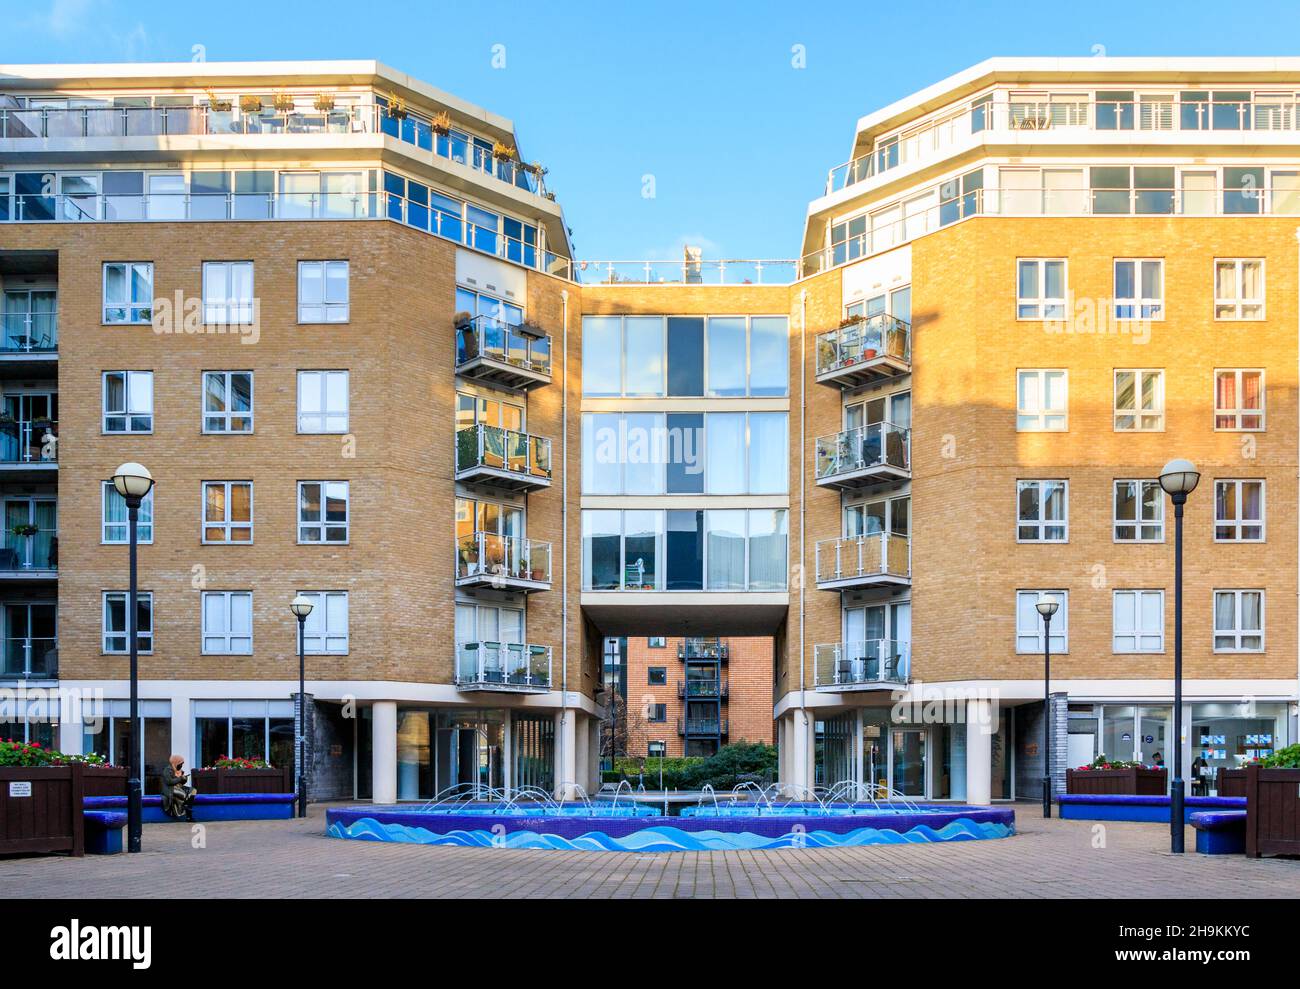 Water Feature nella piazza centrale del Mosaic, un complesso di appartamenti su Narrow Street a Limehouse, Londra, Regno Unito Foto Stock